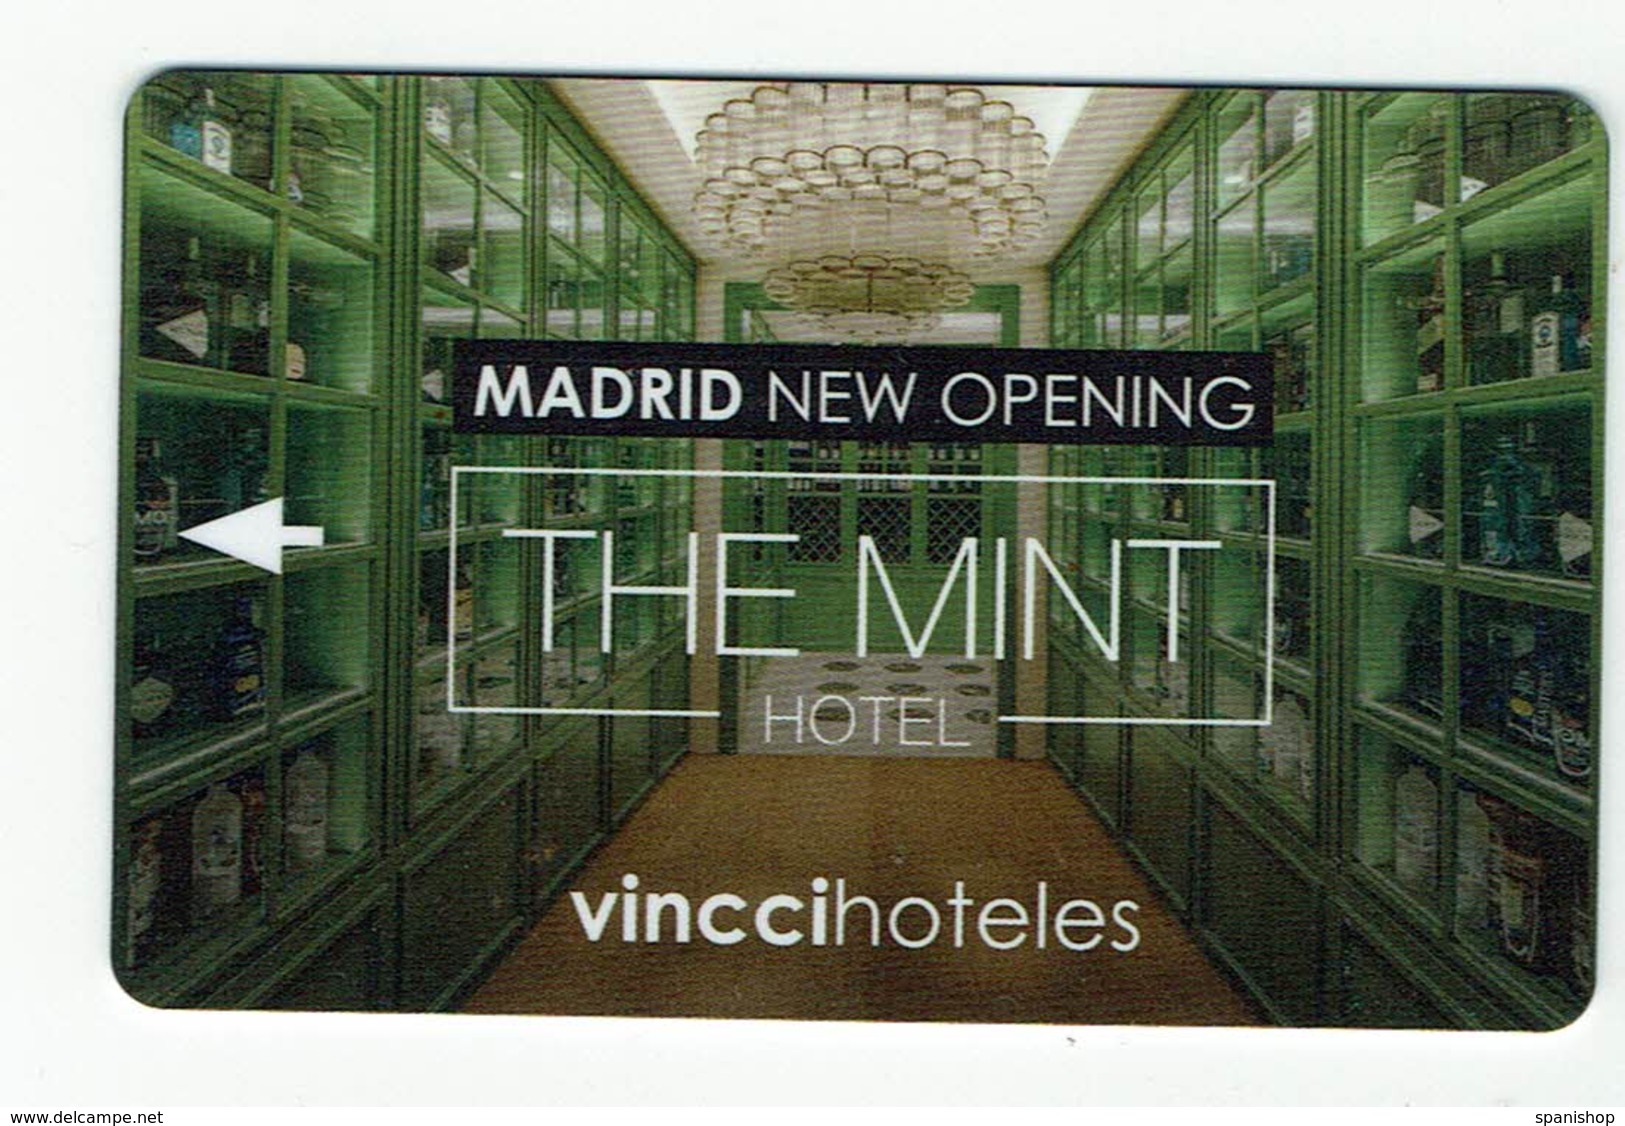 HOTEL VINCCI THE MINT, Madrid, Llave, Clef, Key Keycard - Hotel Labels